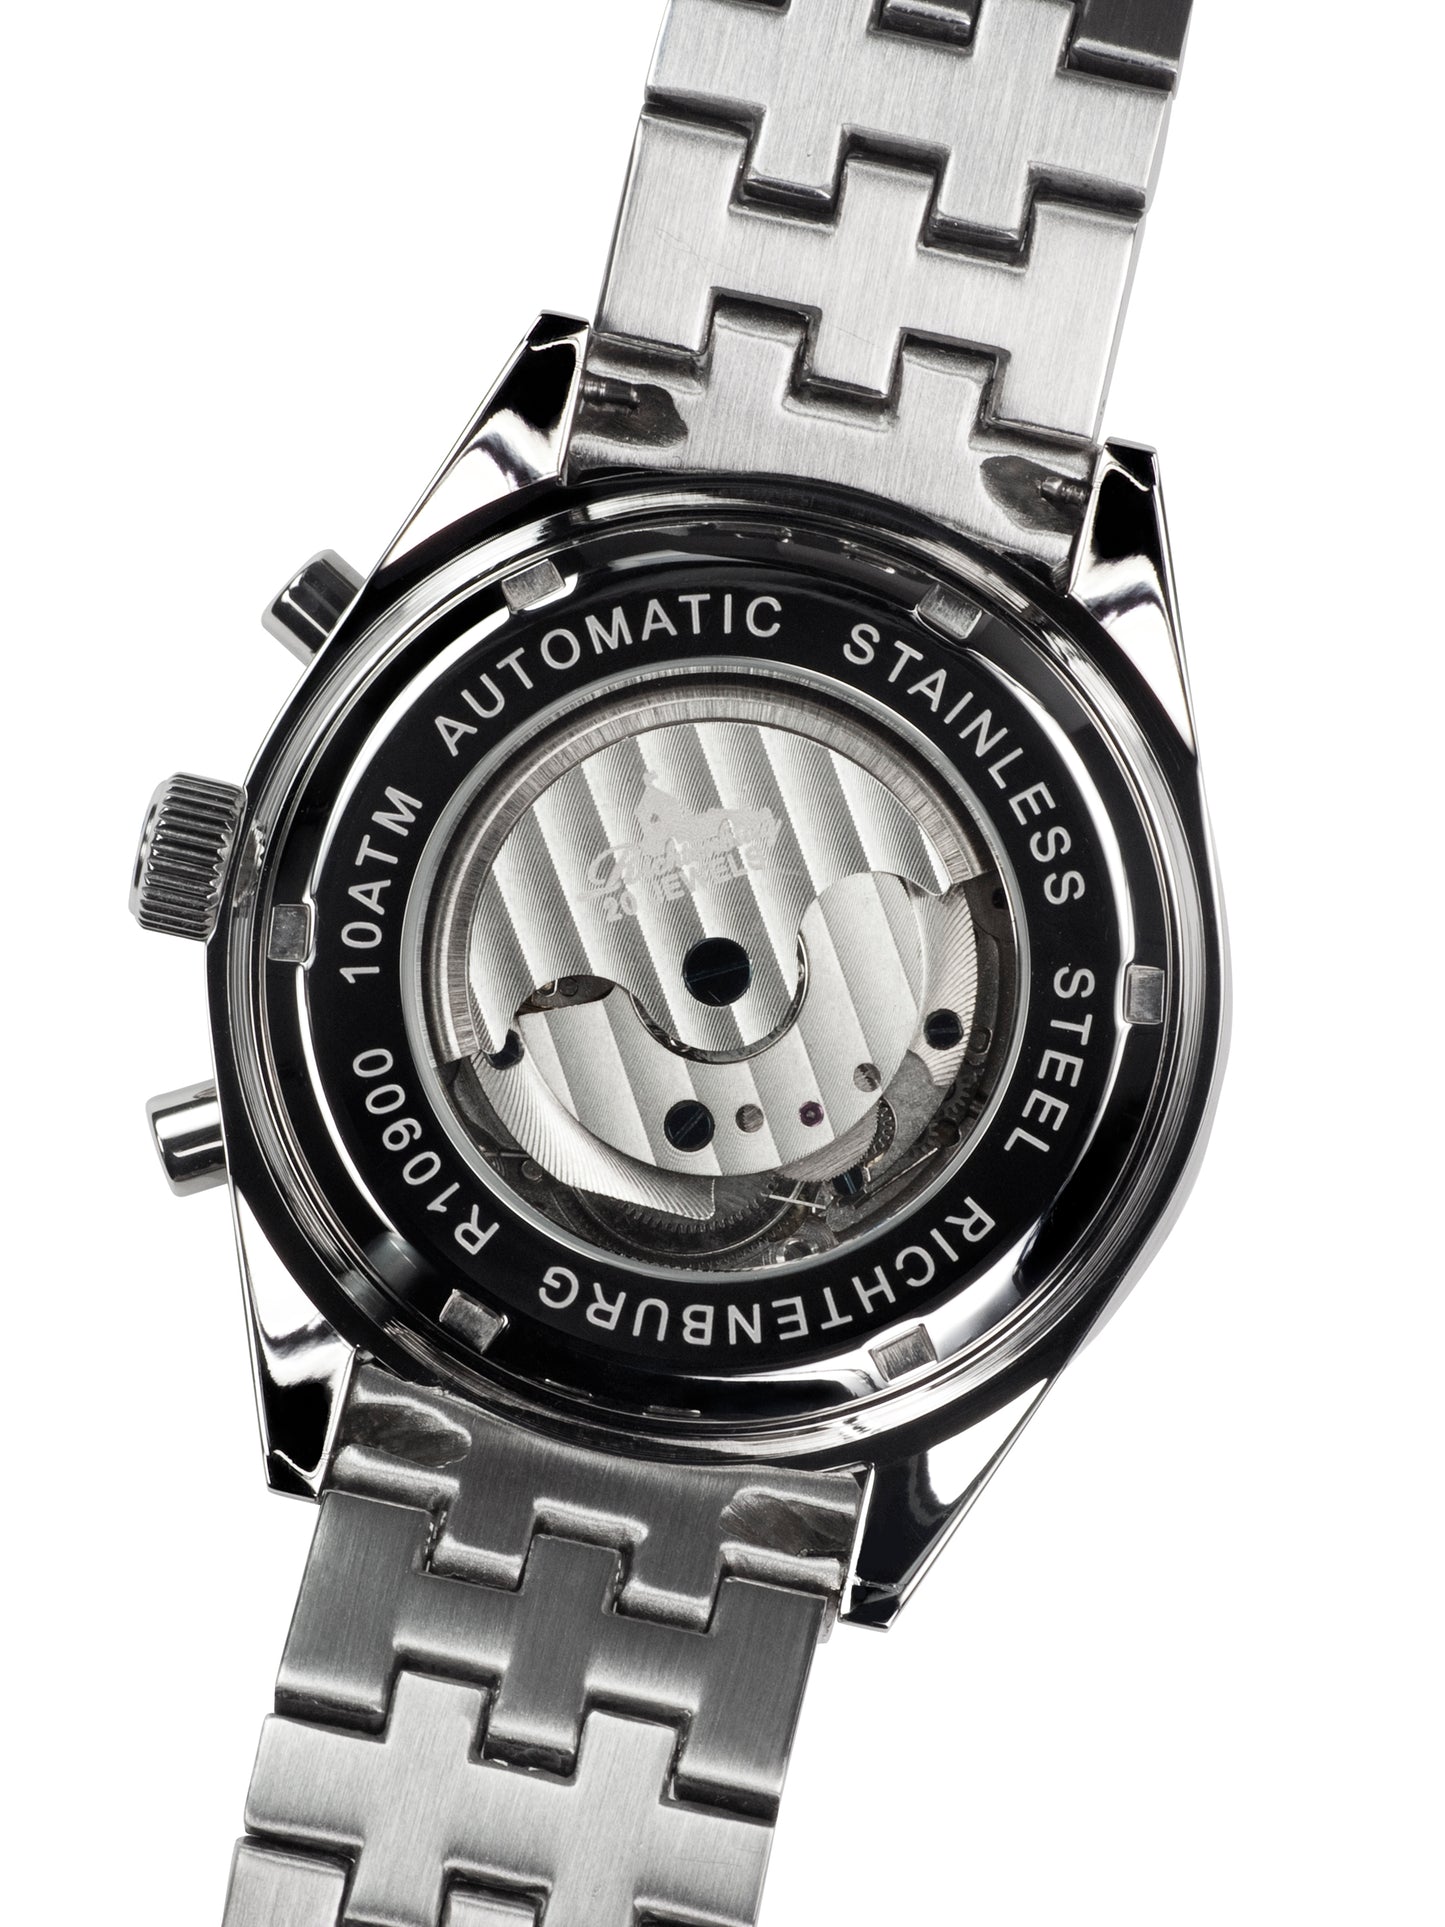 Automatic watches — Stahlfighter — Richtenburg — silver